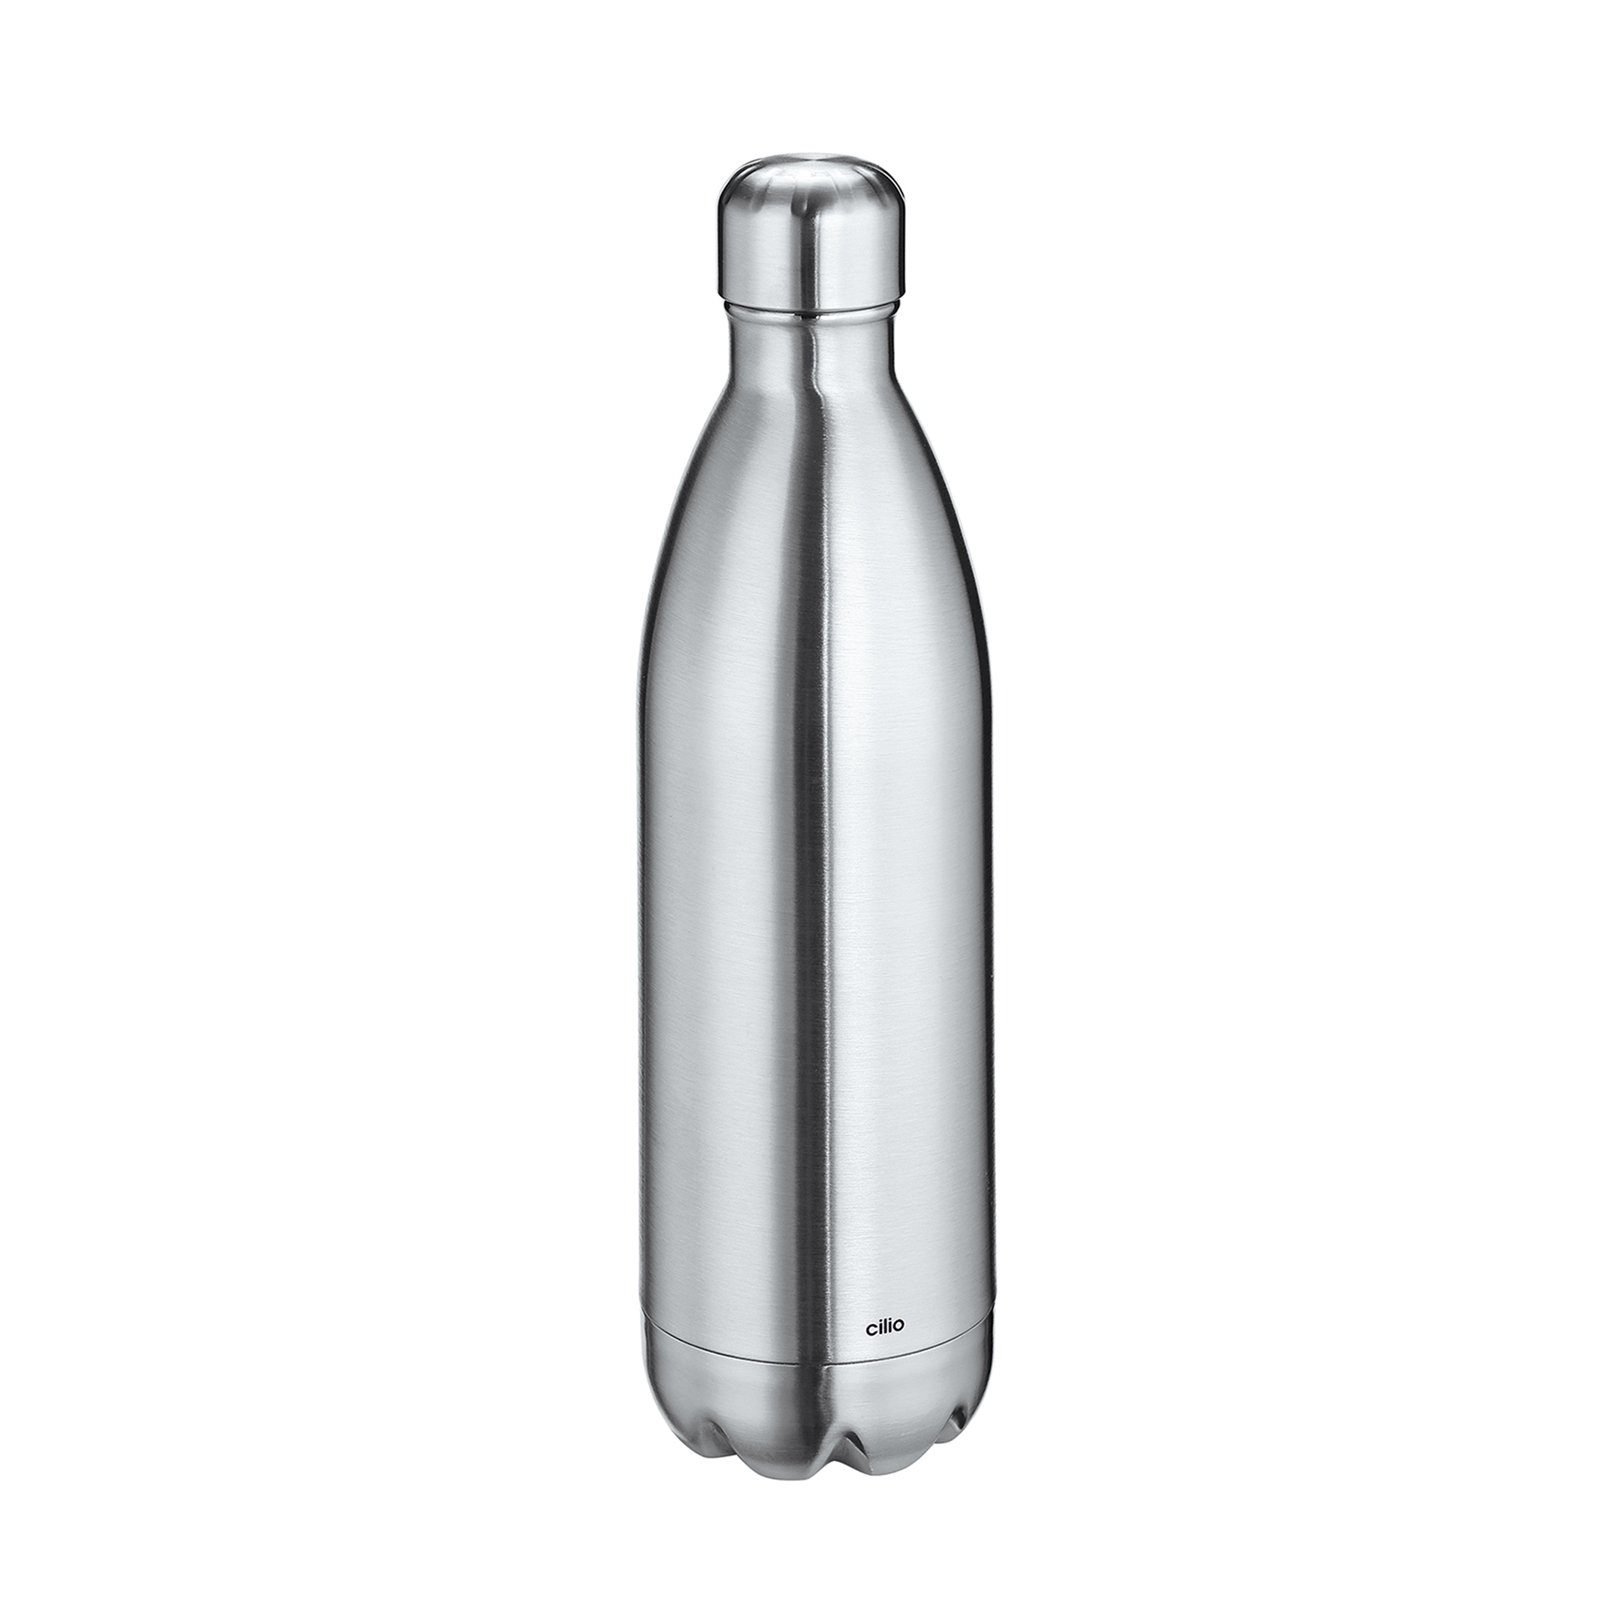 Cilio Isolierflasche Isolierflasche ELEGANTE Liter 1 Silber